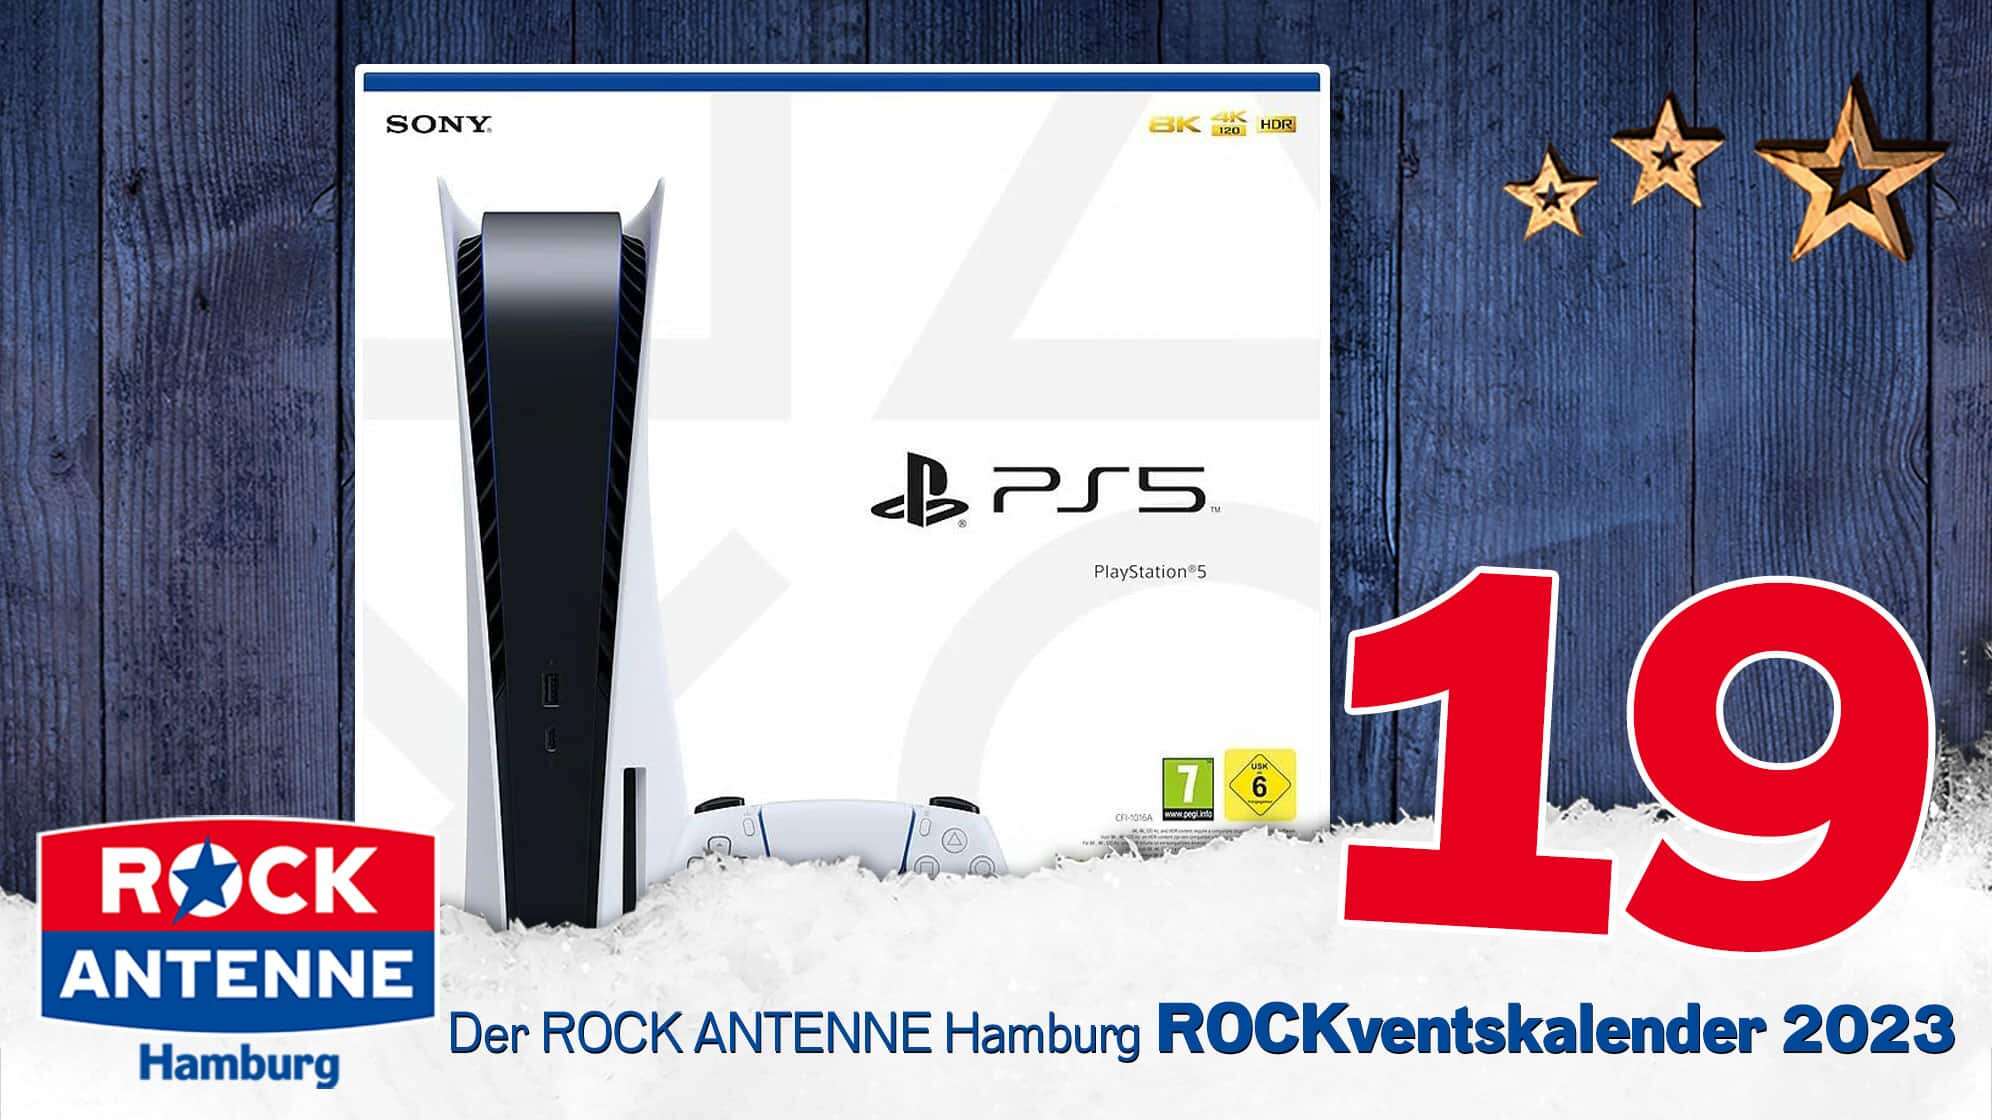 ROCK ANTENNE Hamburg ROCKventskalender Türchen 19: Eine Playstation 5 Konsole von Sony